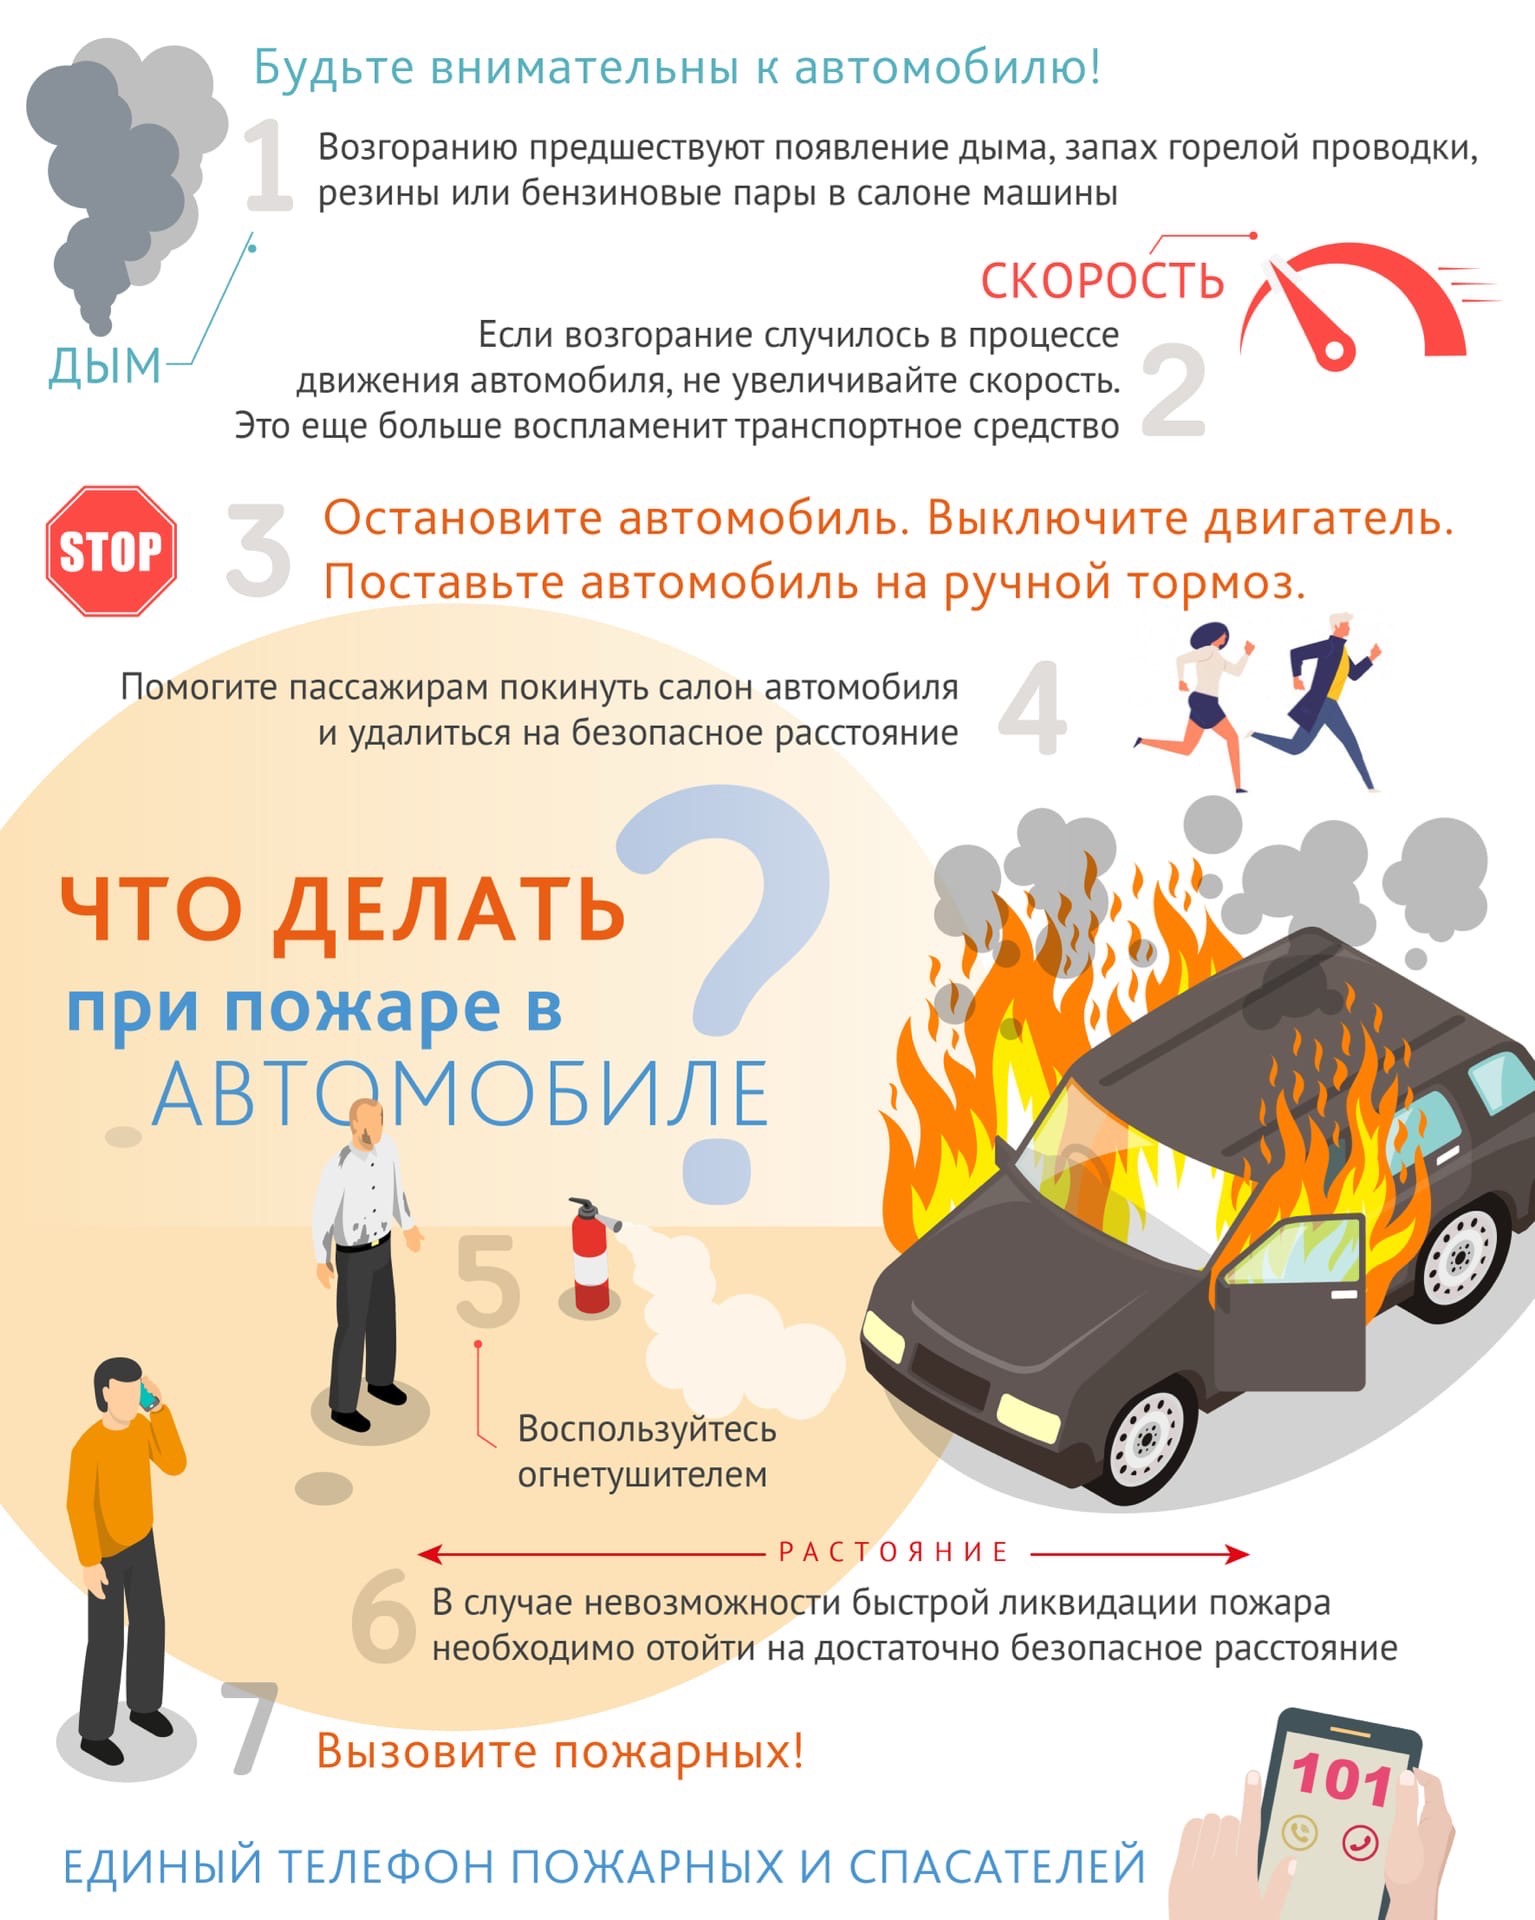 Памятка. Пожар в автомобиле: как предотвратить?